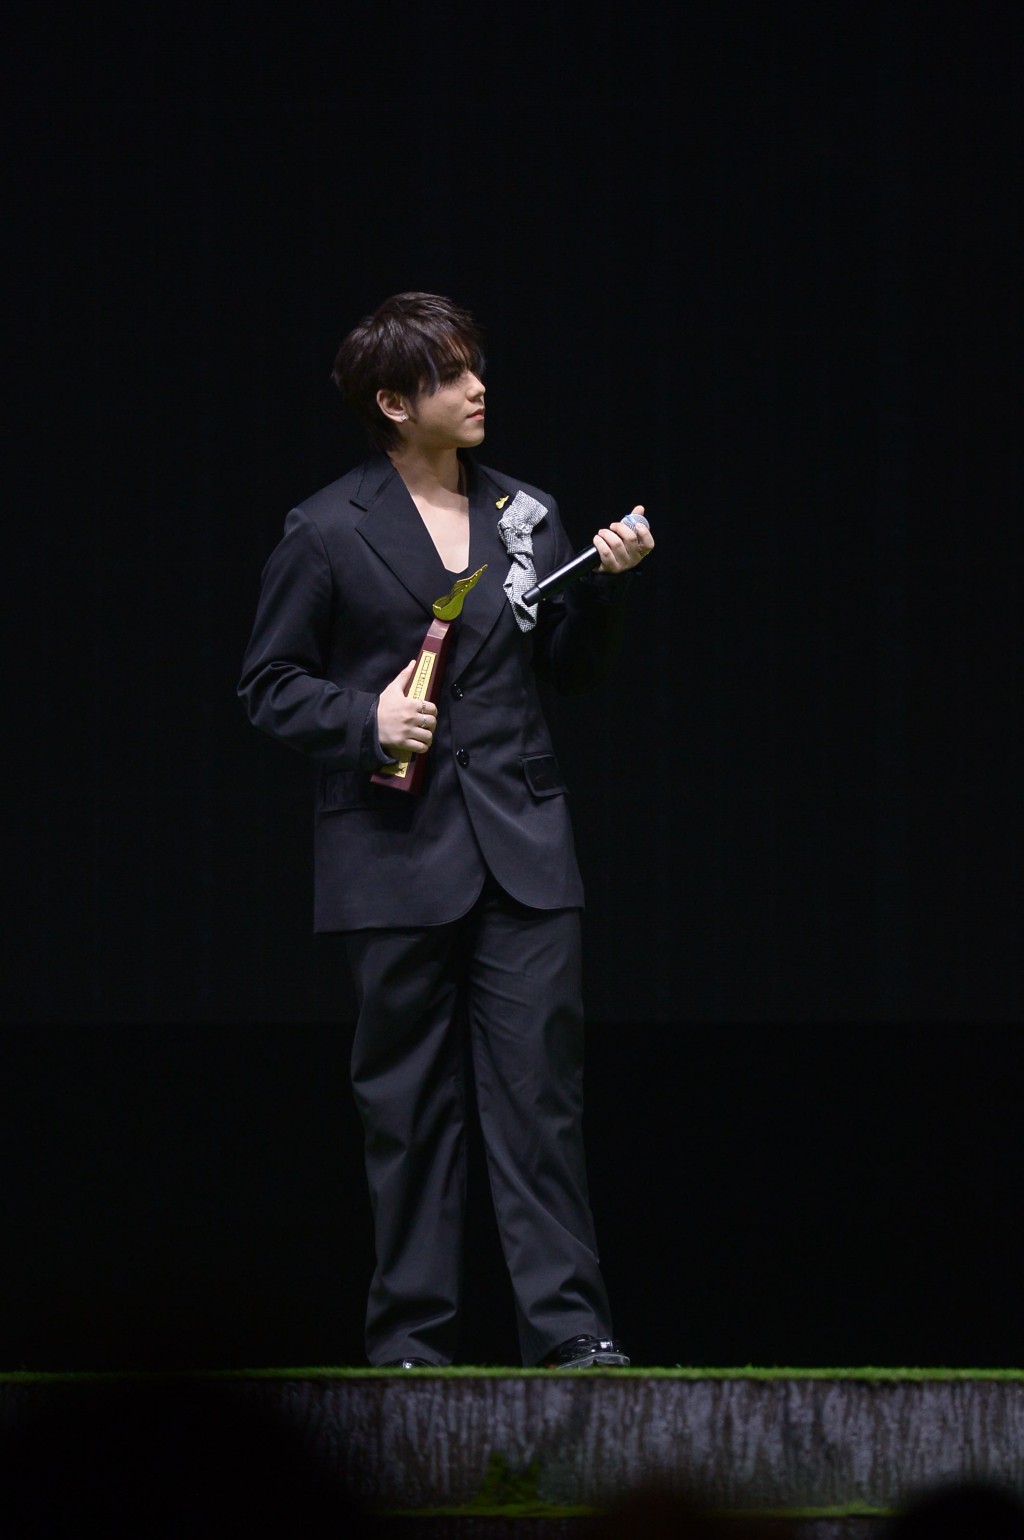 姜涛得奖歌曲是《涛》。